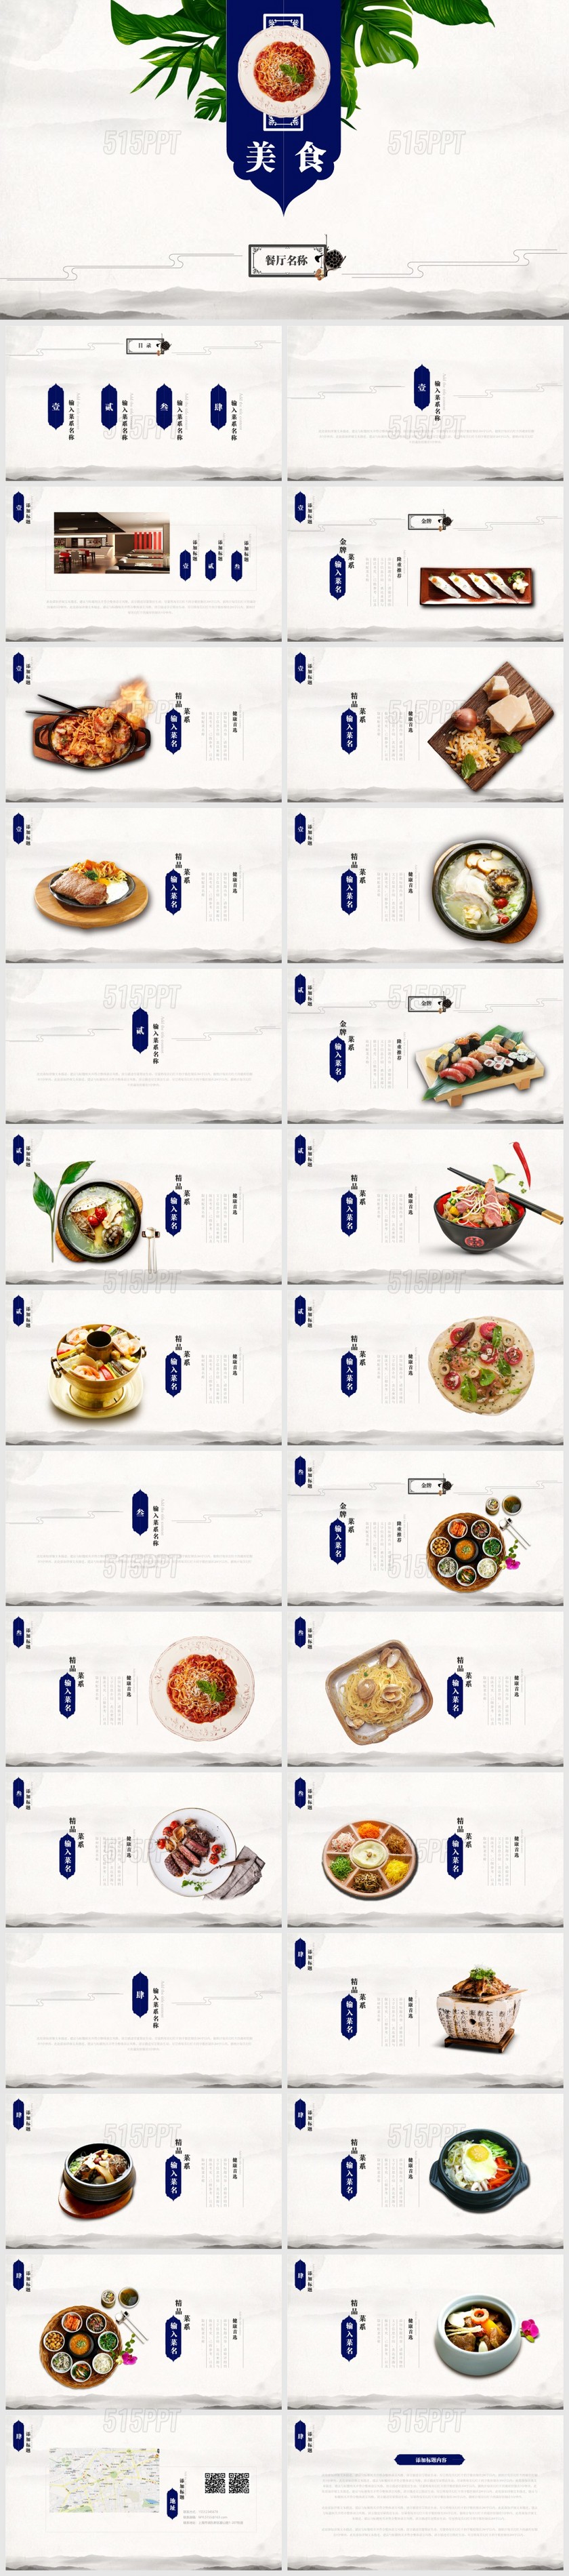 紫色中国风餐饮美食西餐厅介绍舌尖上的美食美食餐饮PPT模板